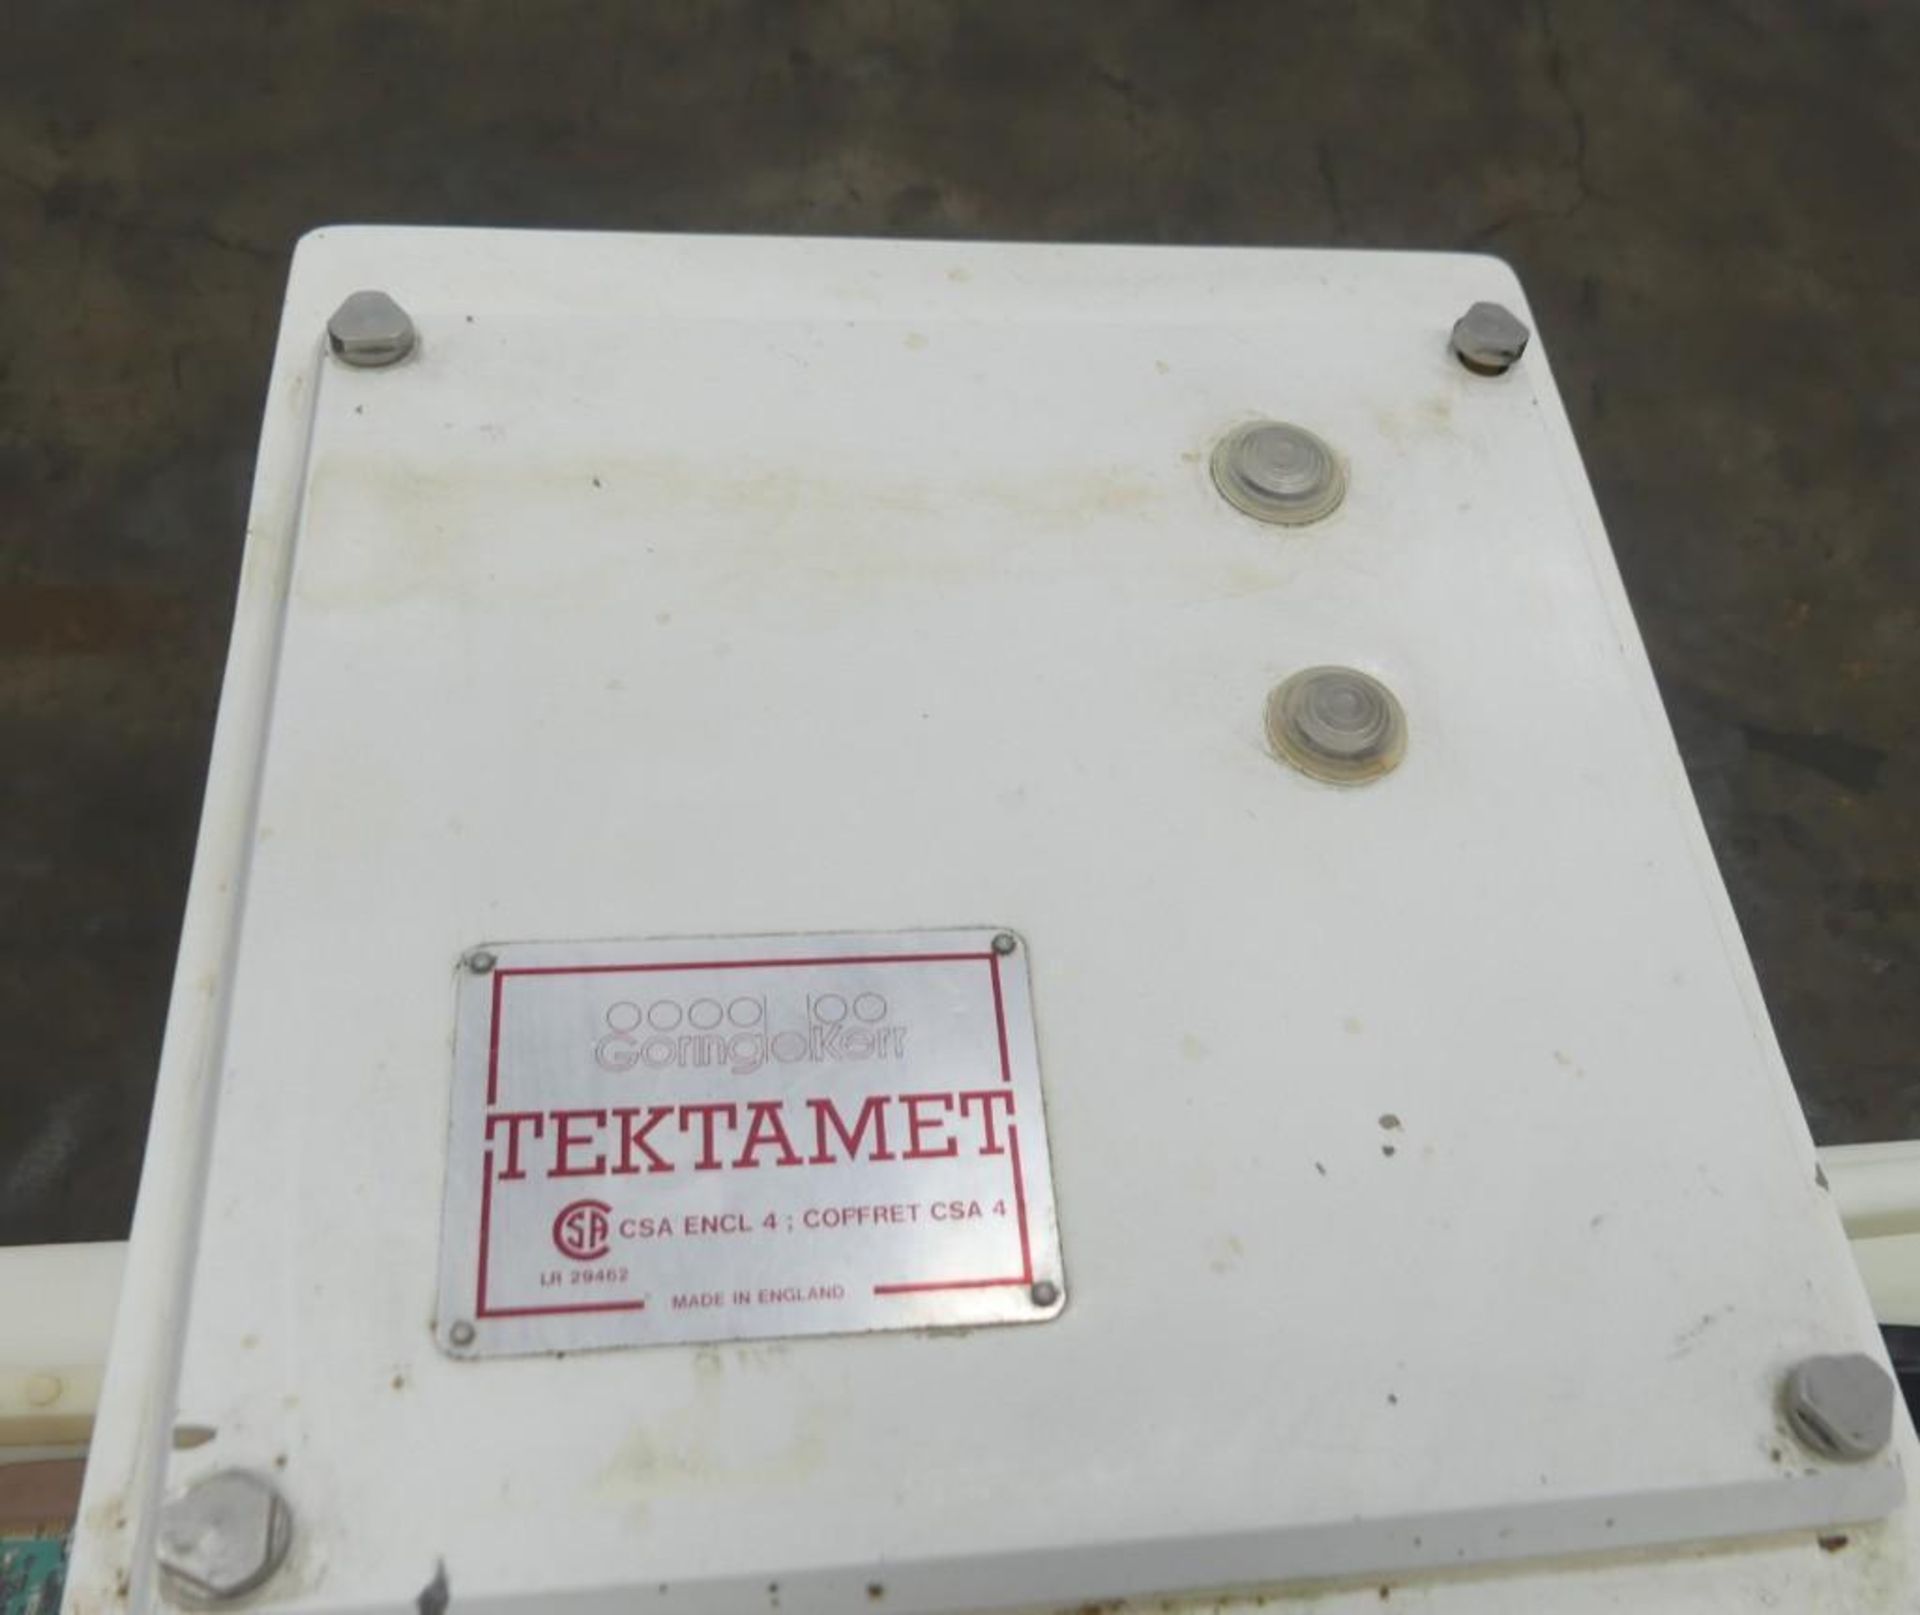 Goring Kerr Tektamet 211 9.75" H by 4.5" W Metal Detector - Image 22 of 24